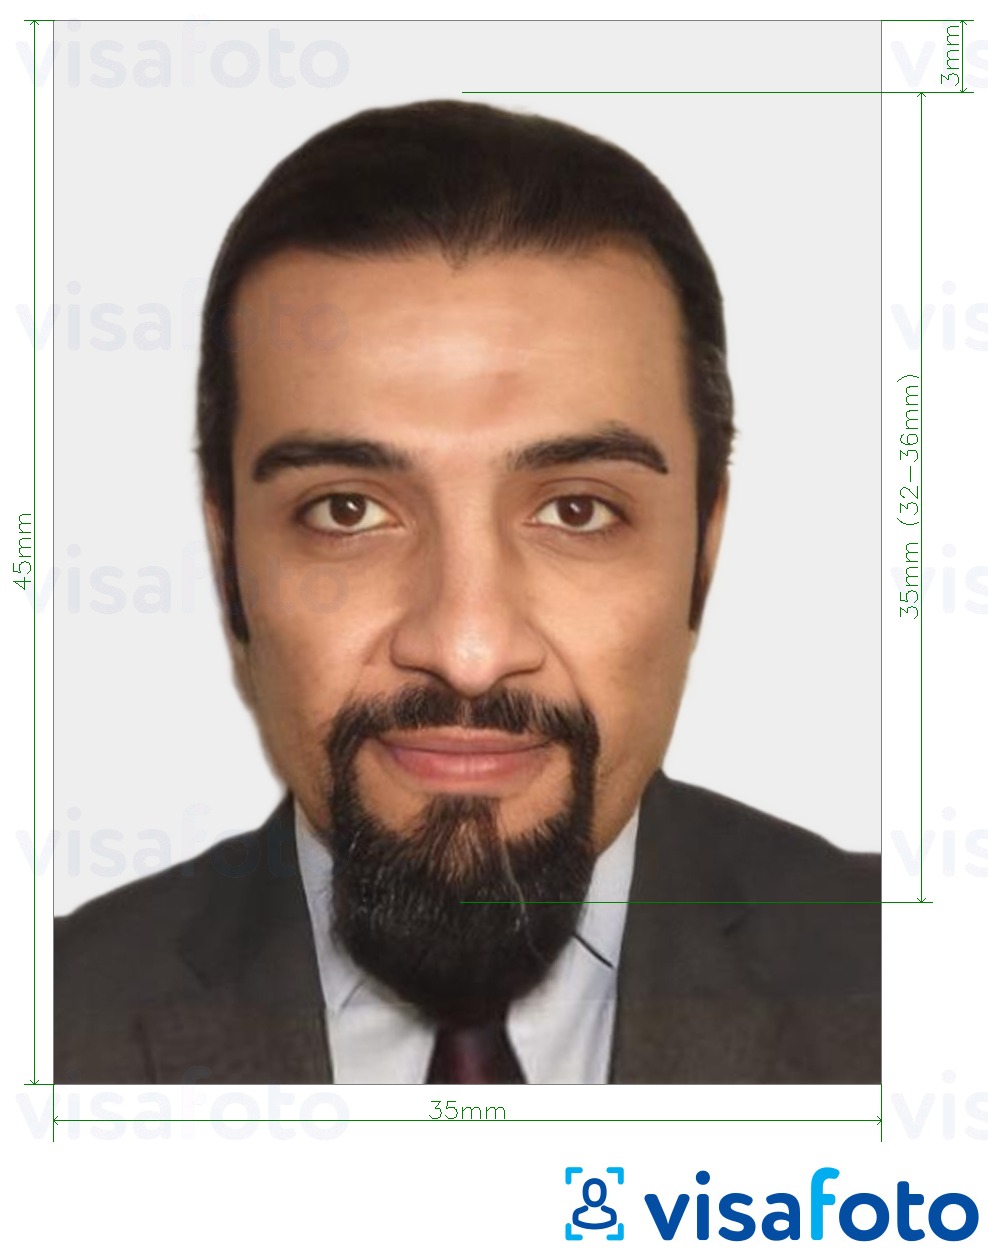 Contoh dari foto untuk Visa Maroko 35x45 mm (3,5x4,5 cm) dengan ukuran spesifikasi yang tepat